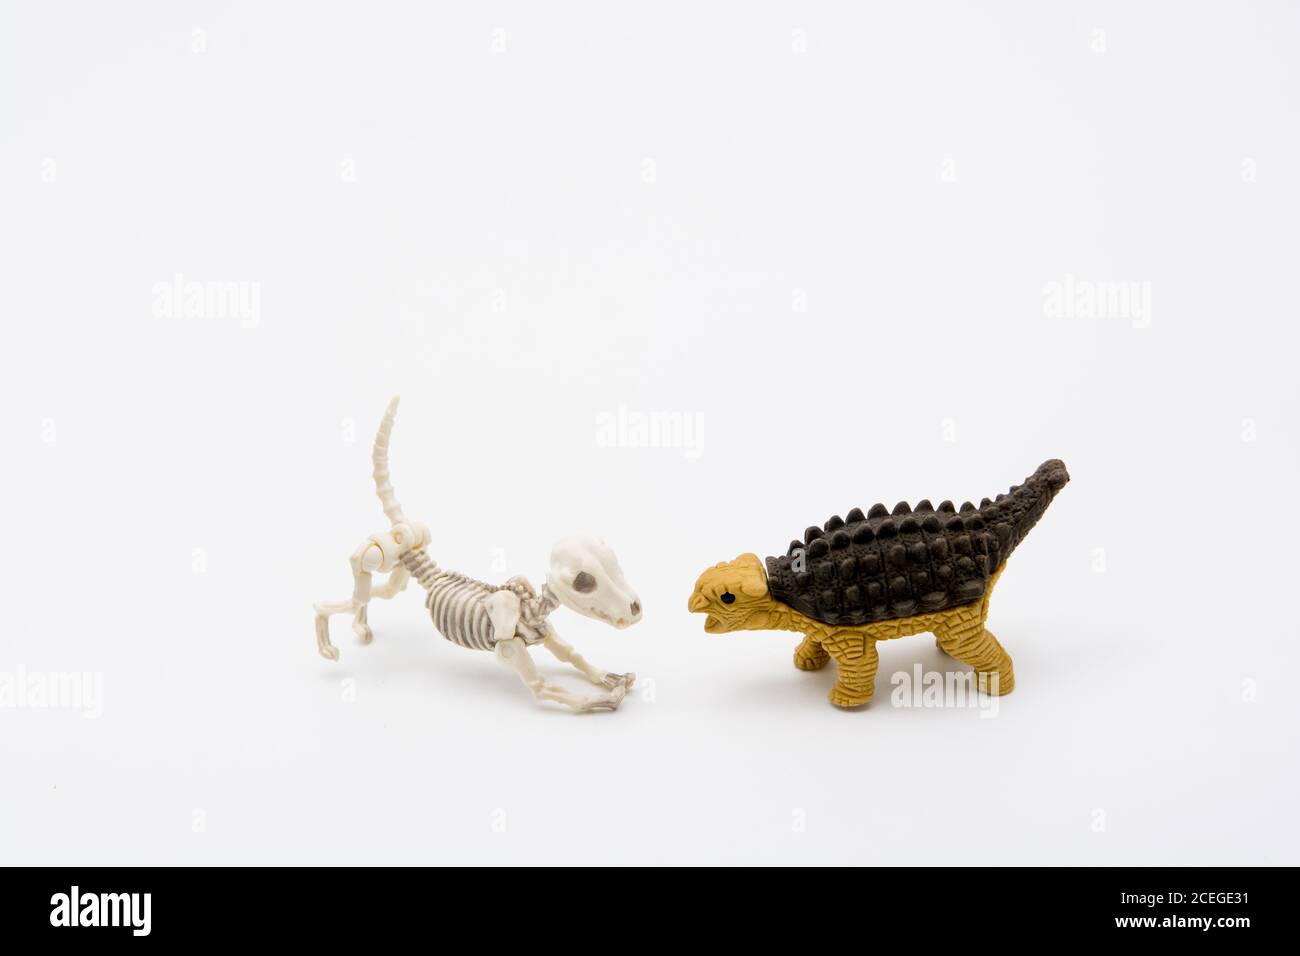 Esqueleto de perro y Ankylosaurus, relación de amigos Foto de stock